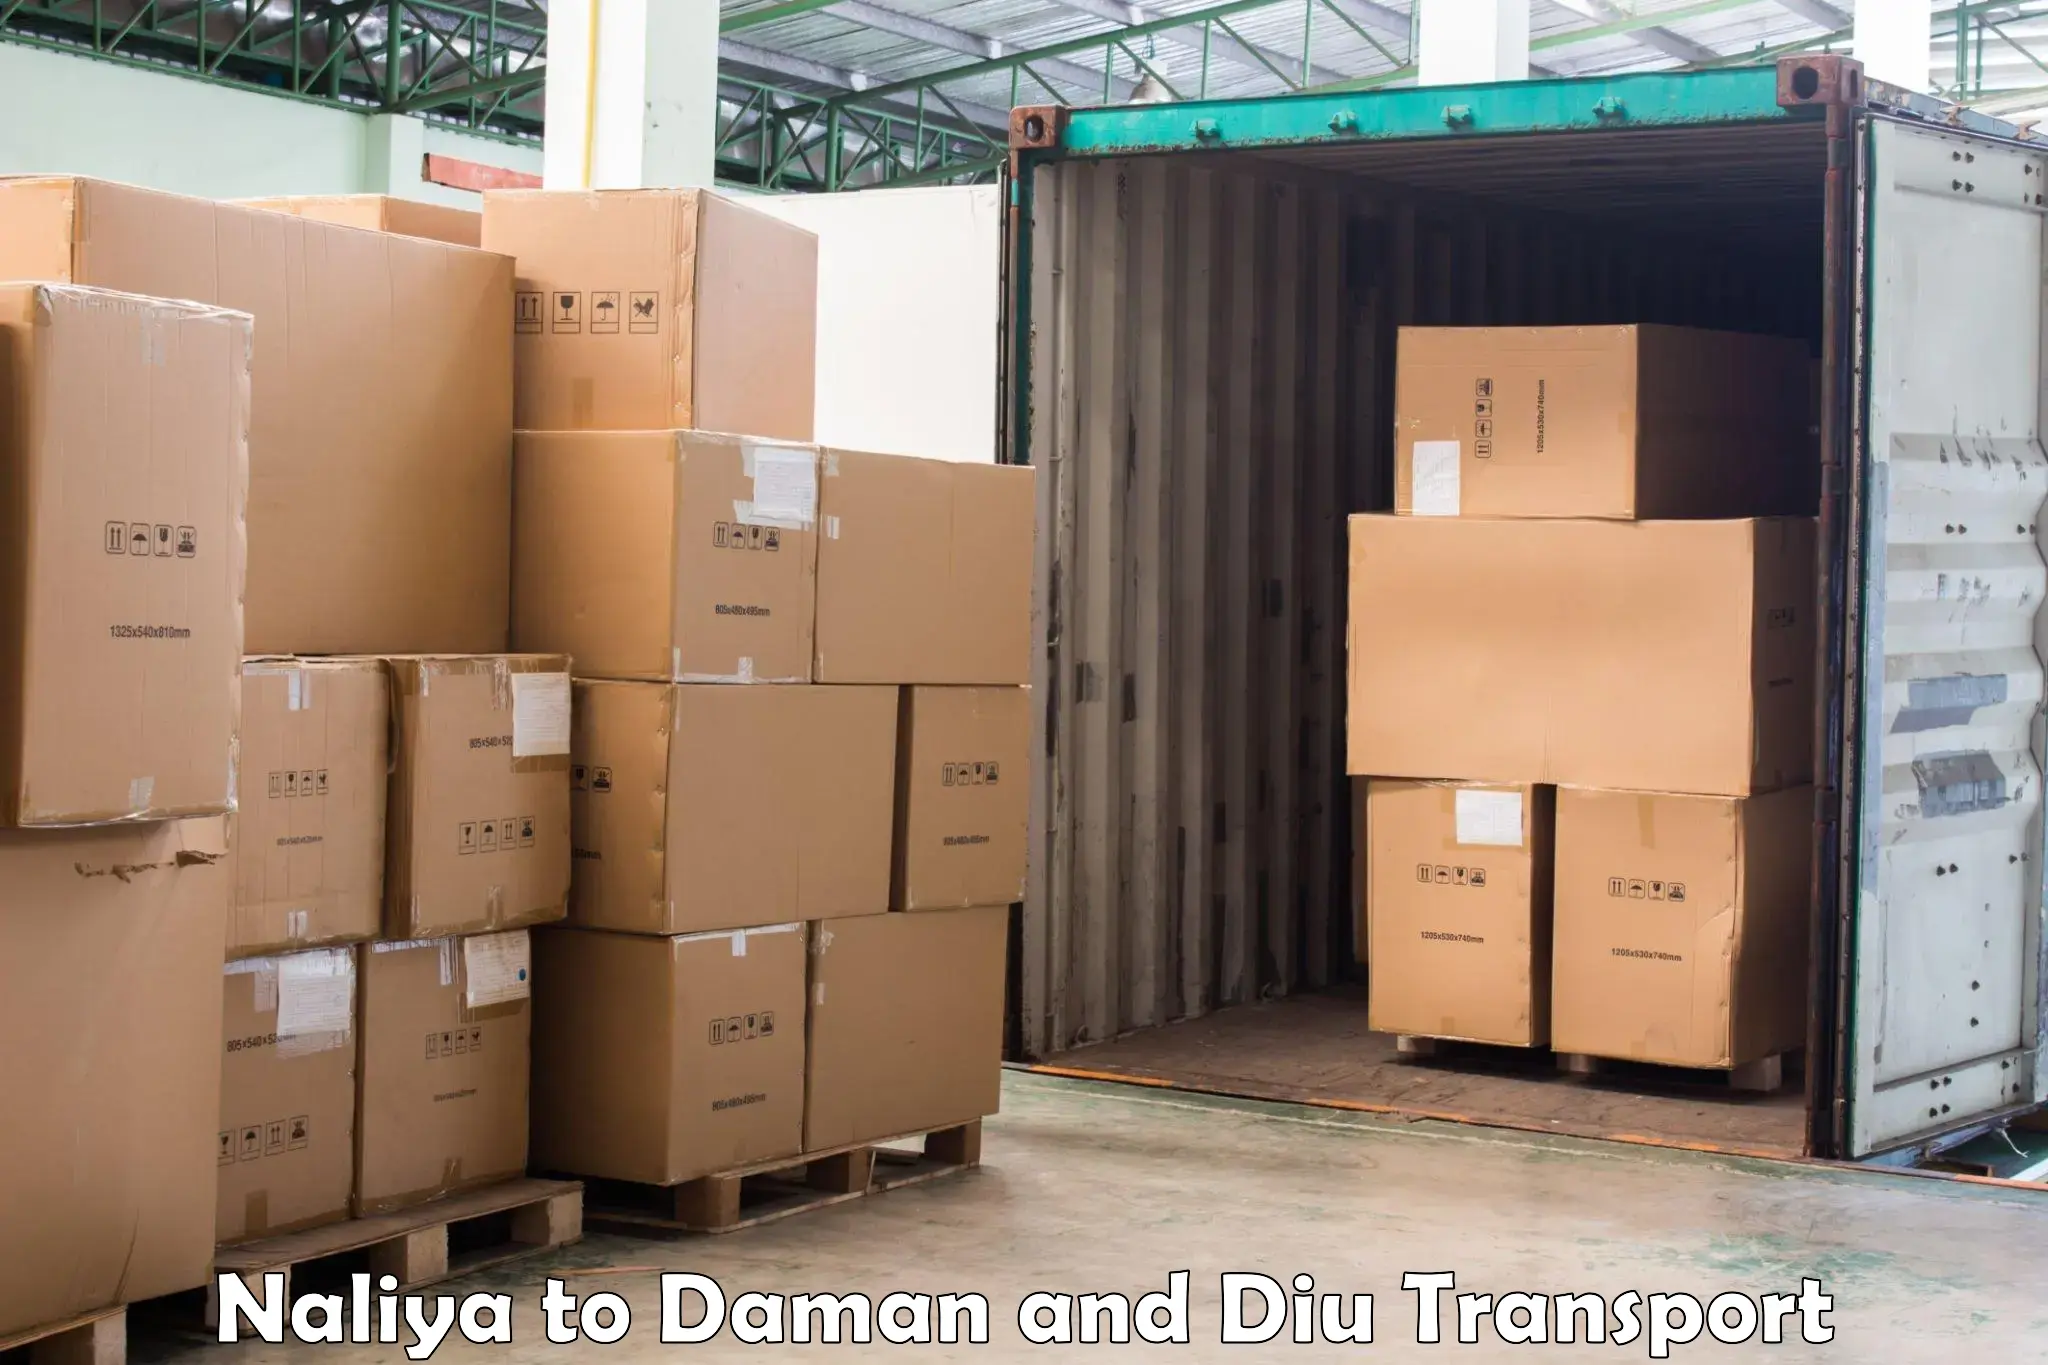 Online transport booking Naliya to Daman